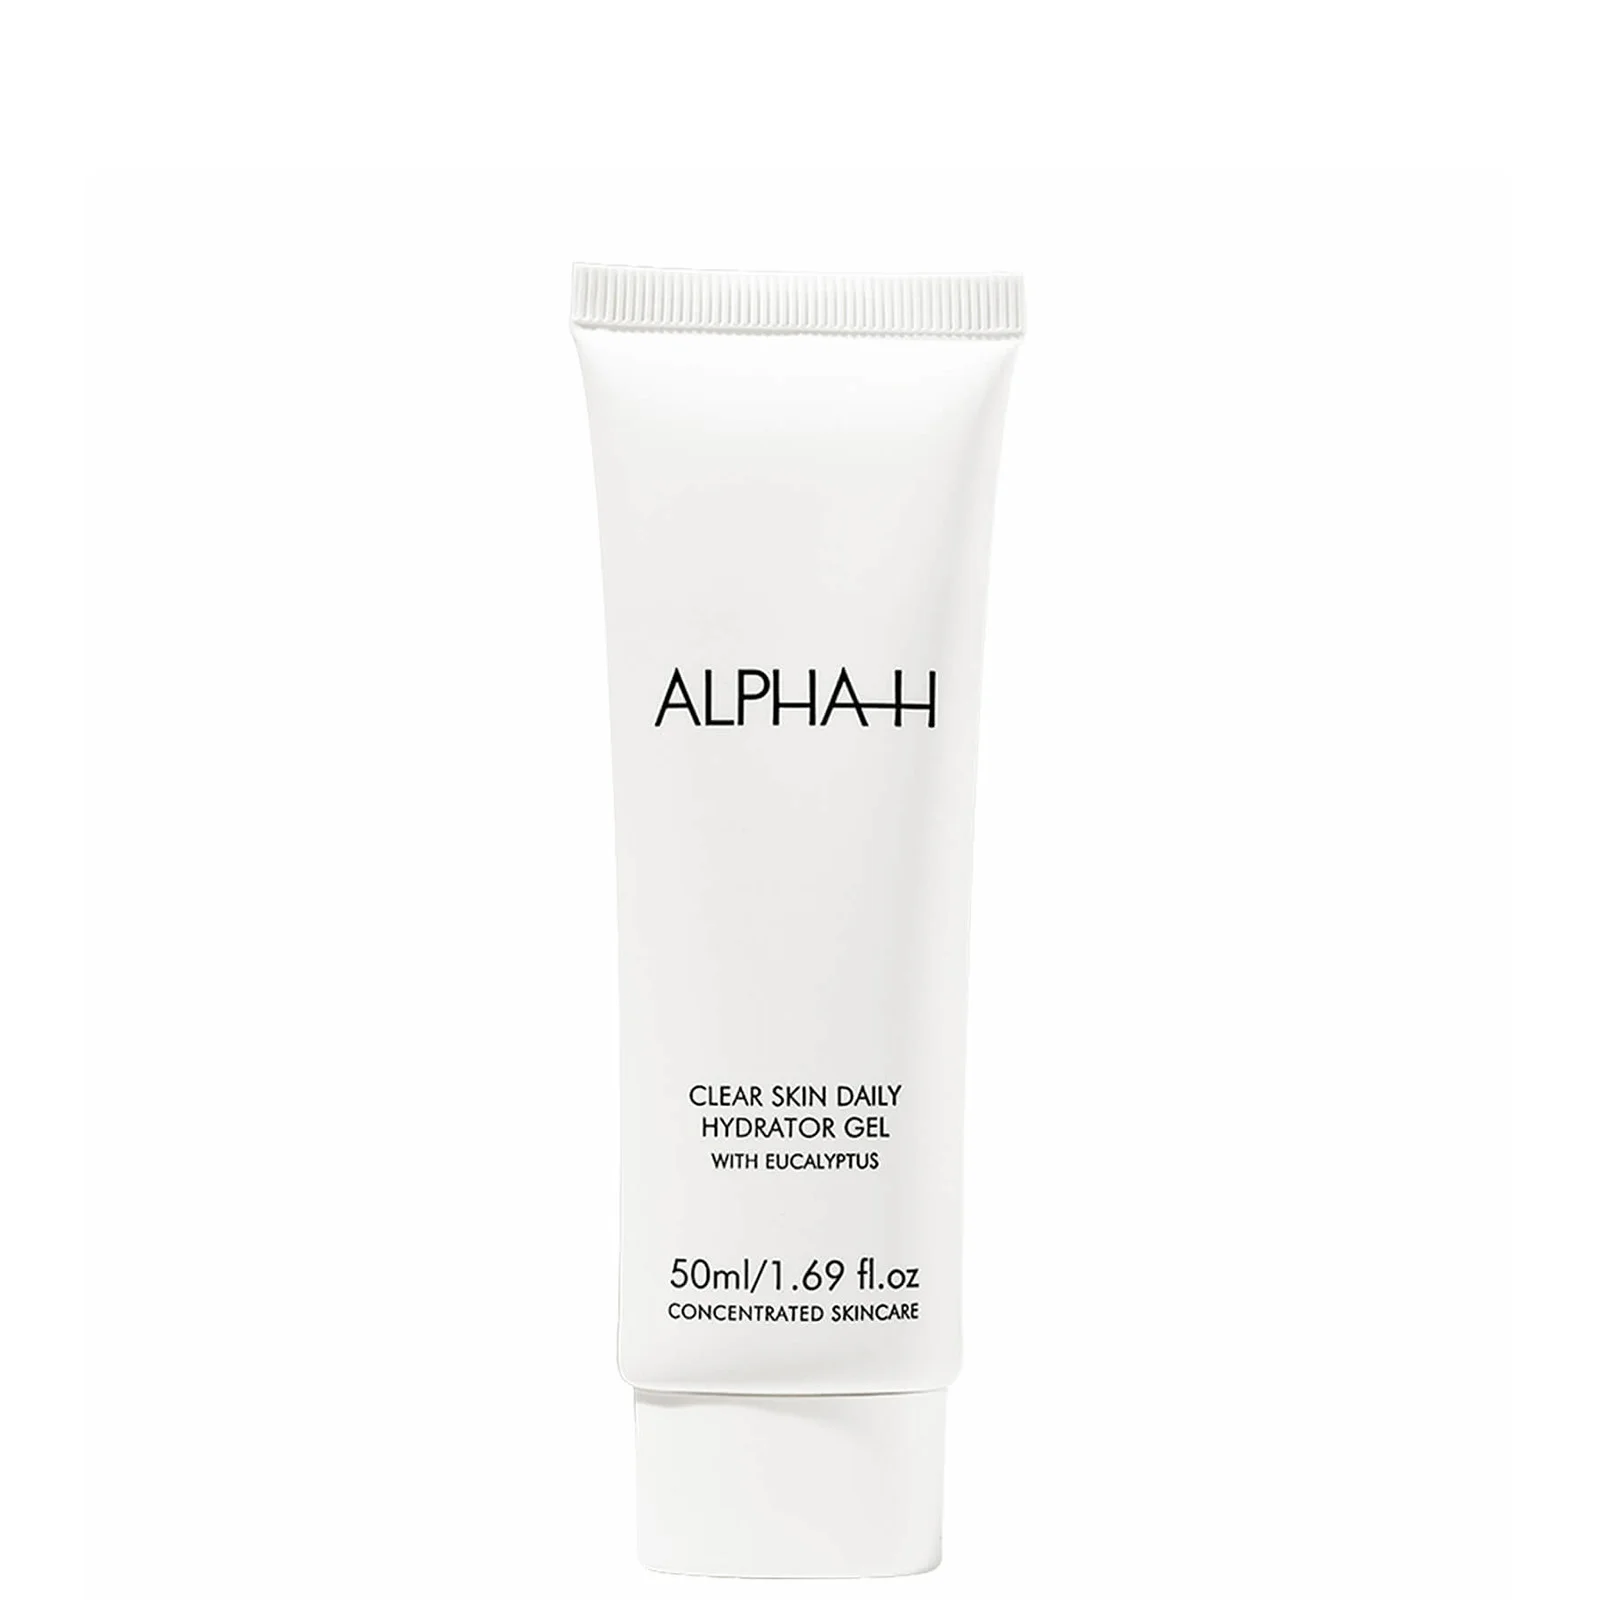 Alpha-H Clear Skin Hydrator Gel 50ml Image 1